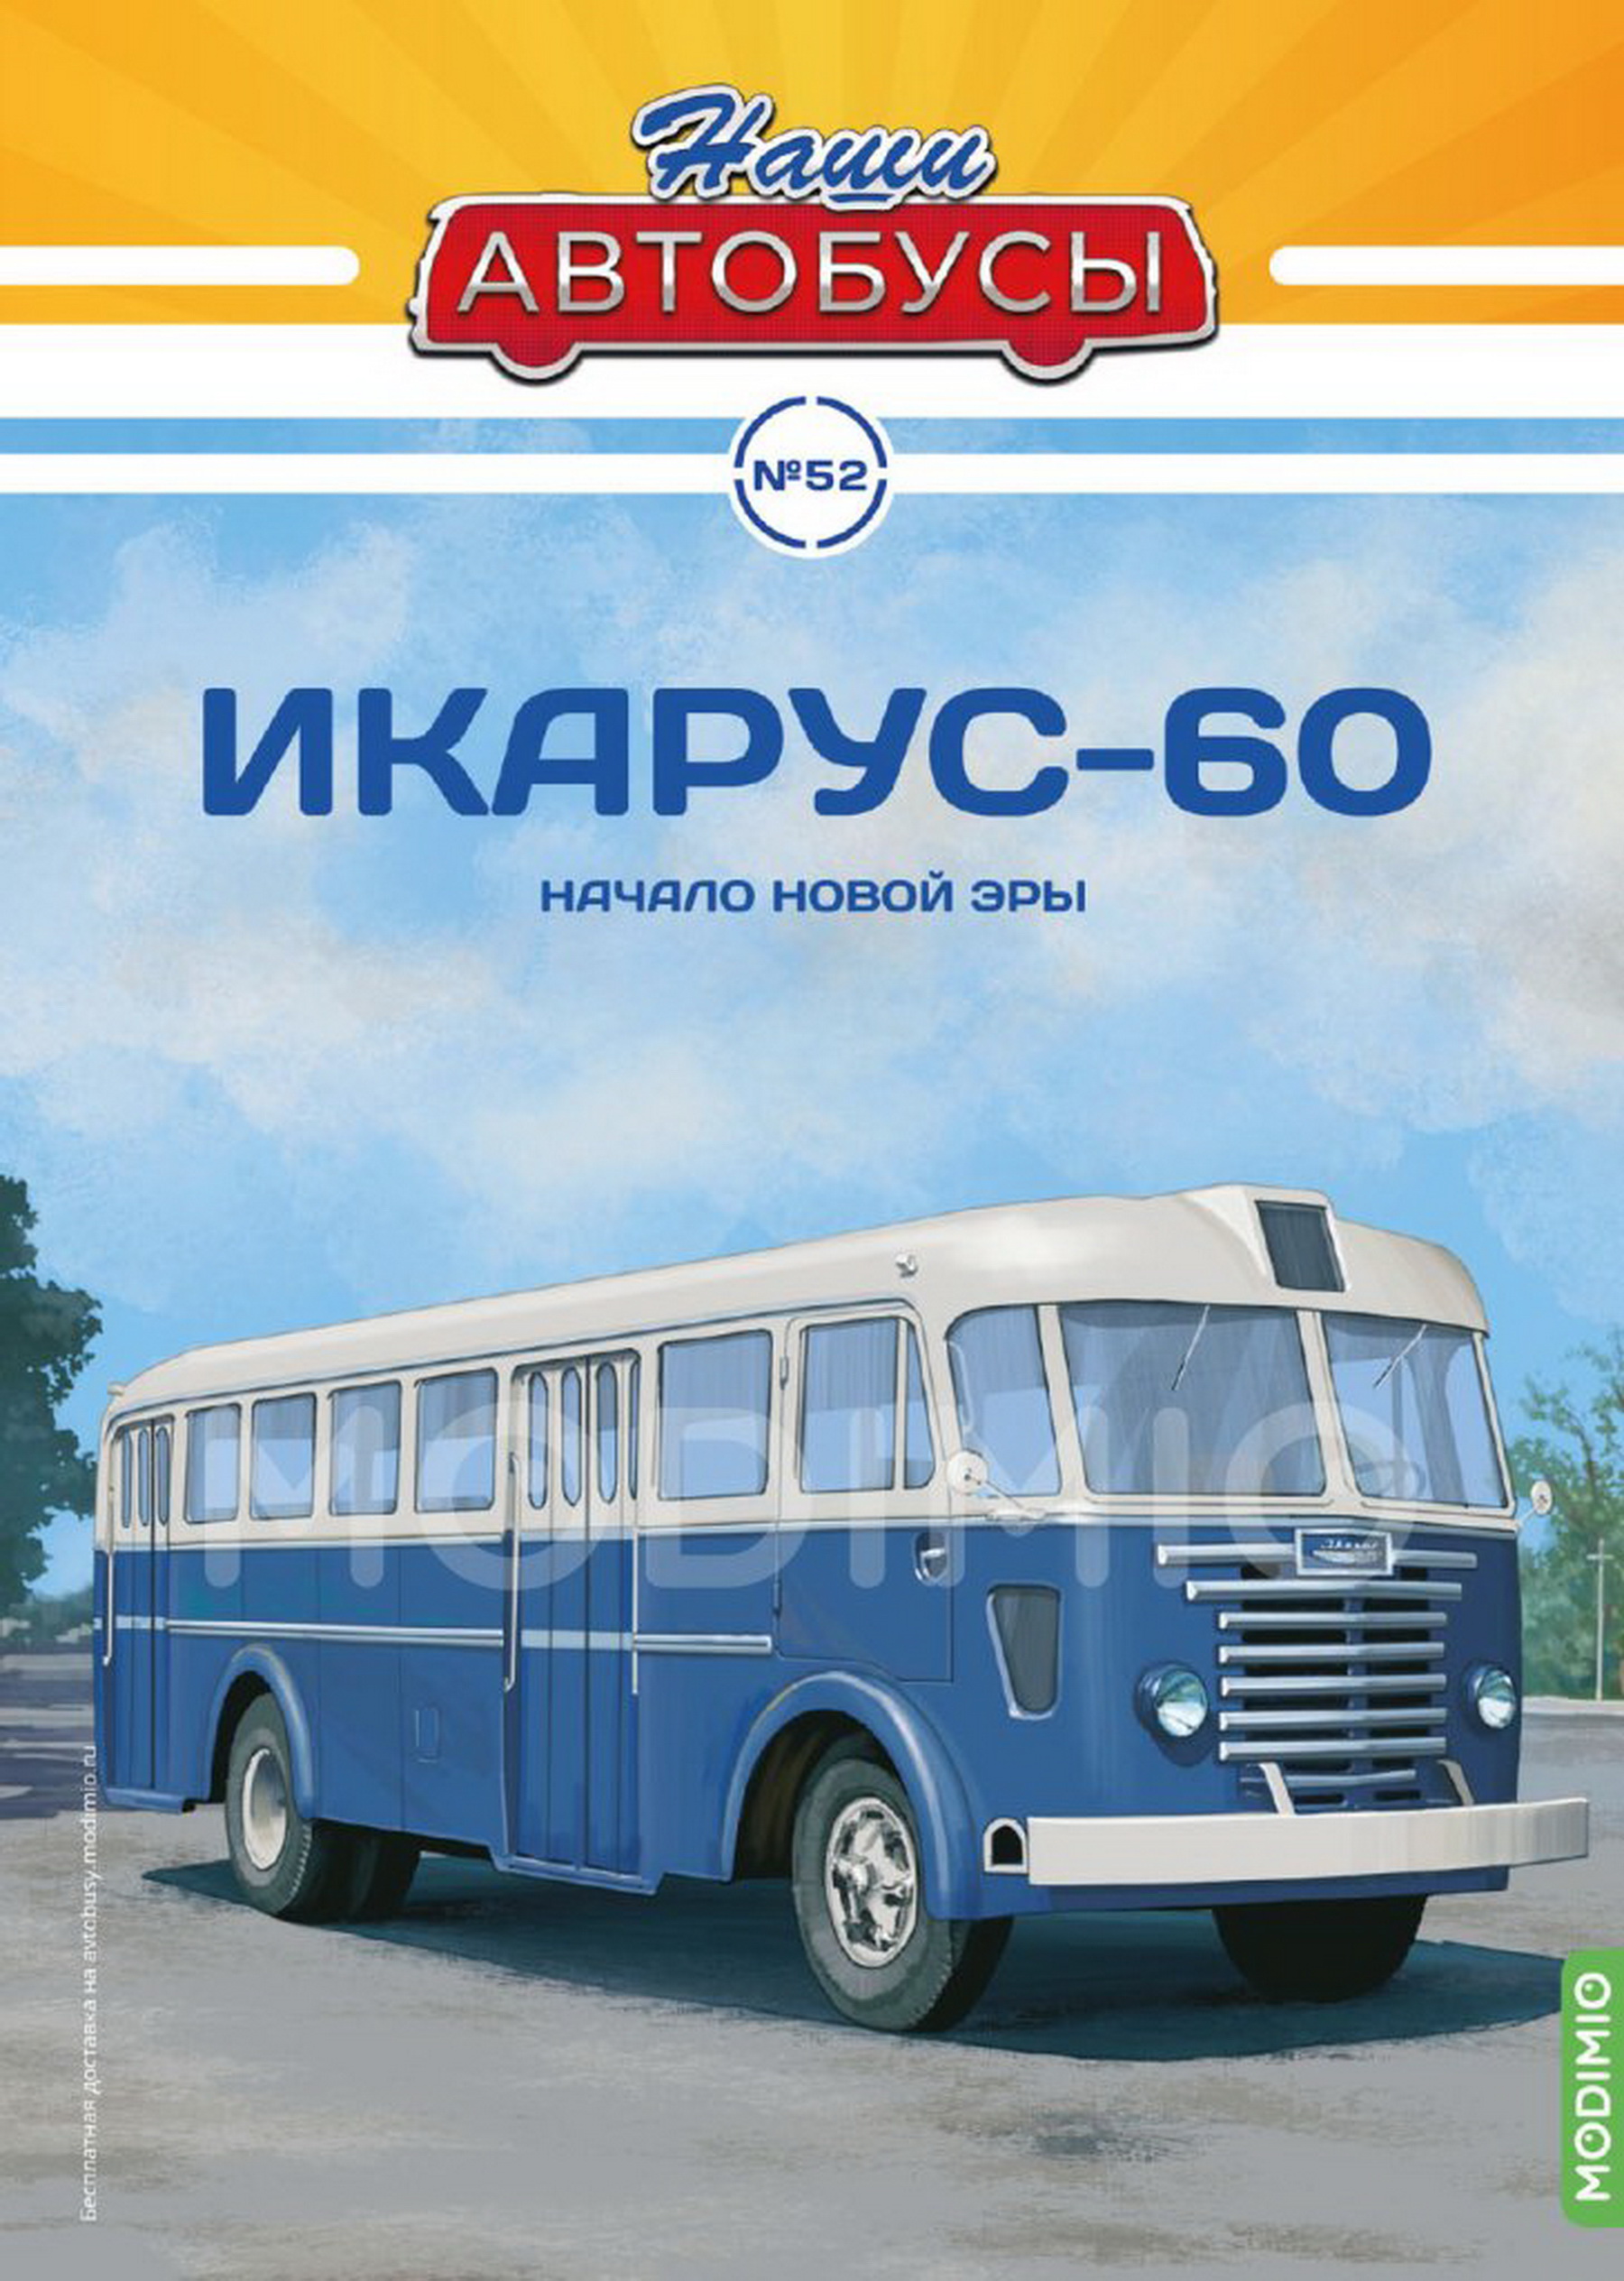 Модель 1:43 Ikarus 60 / Икарус 60 - серия «Наши Автобусы» №52